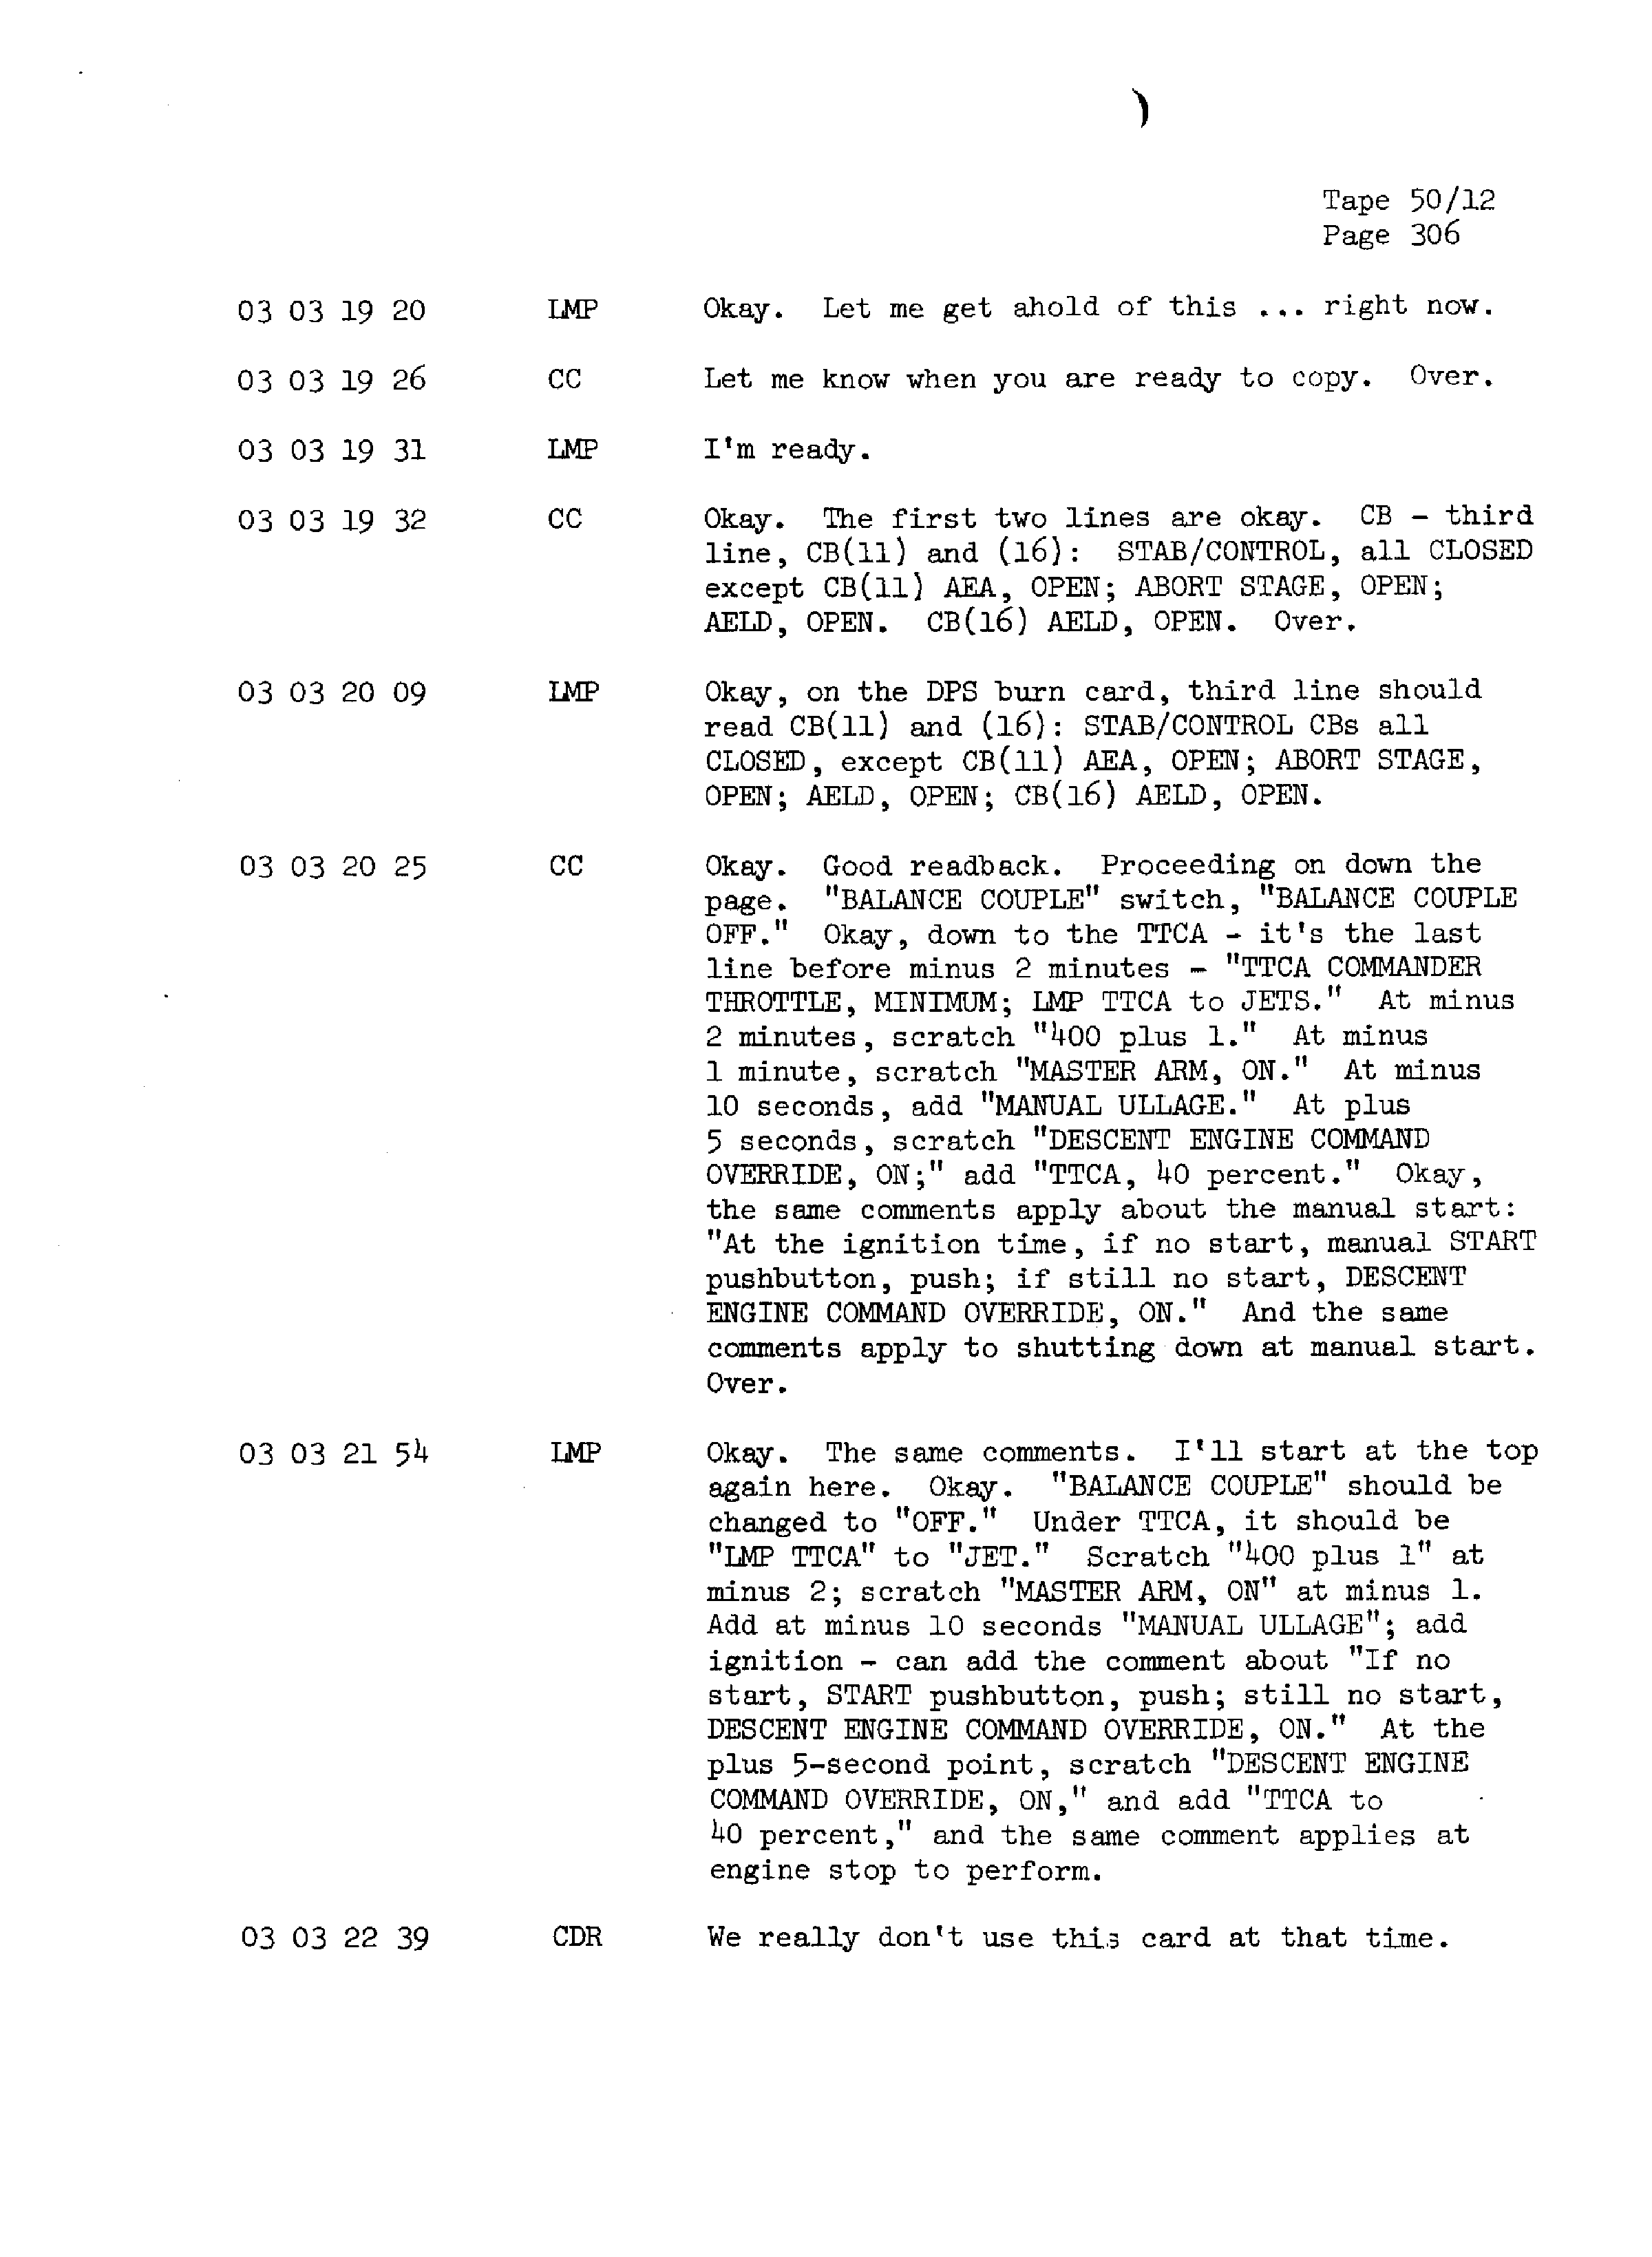 Page 313 of Apollo 13’s original transcript